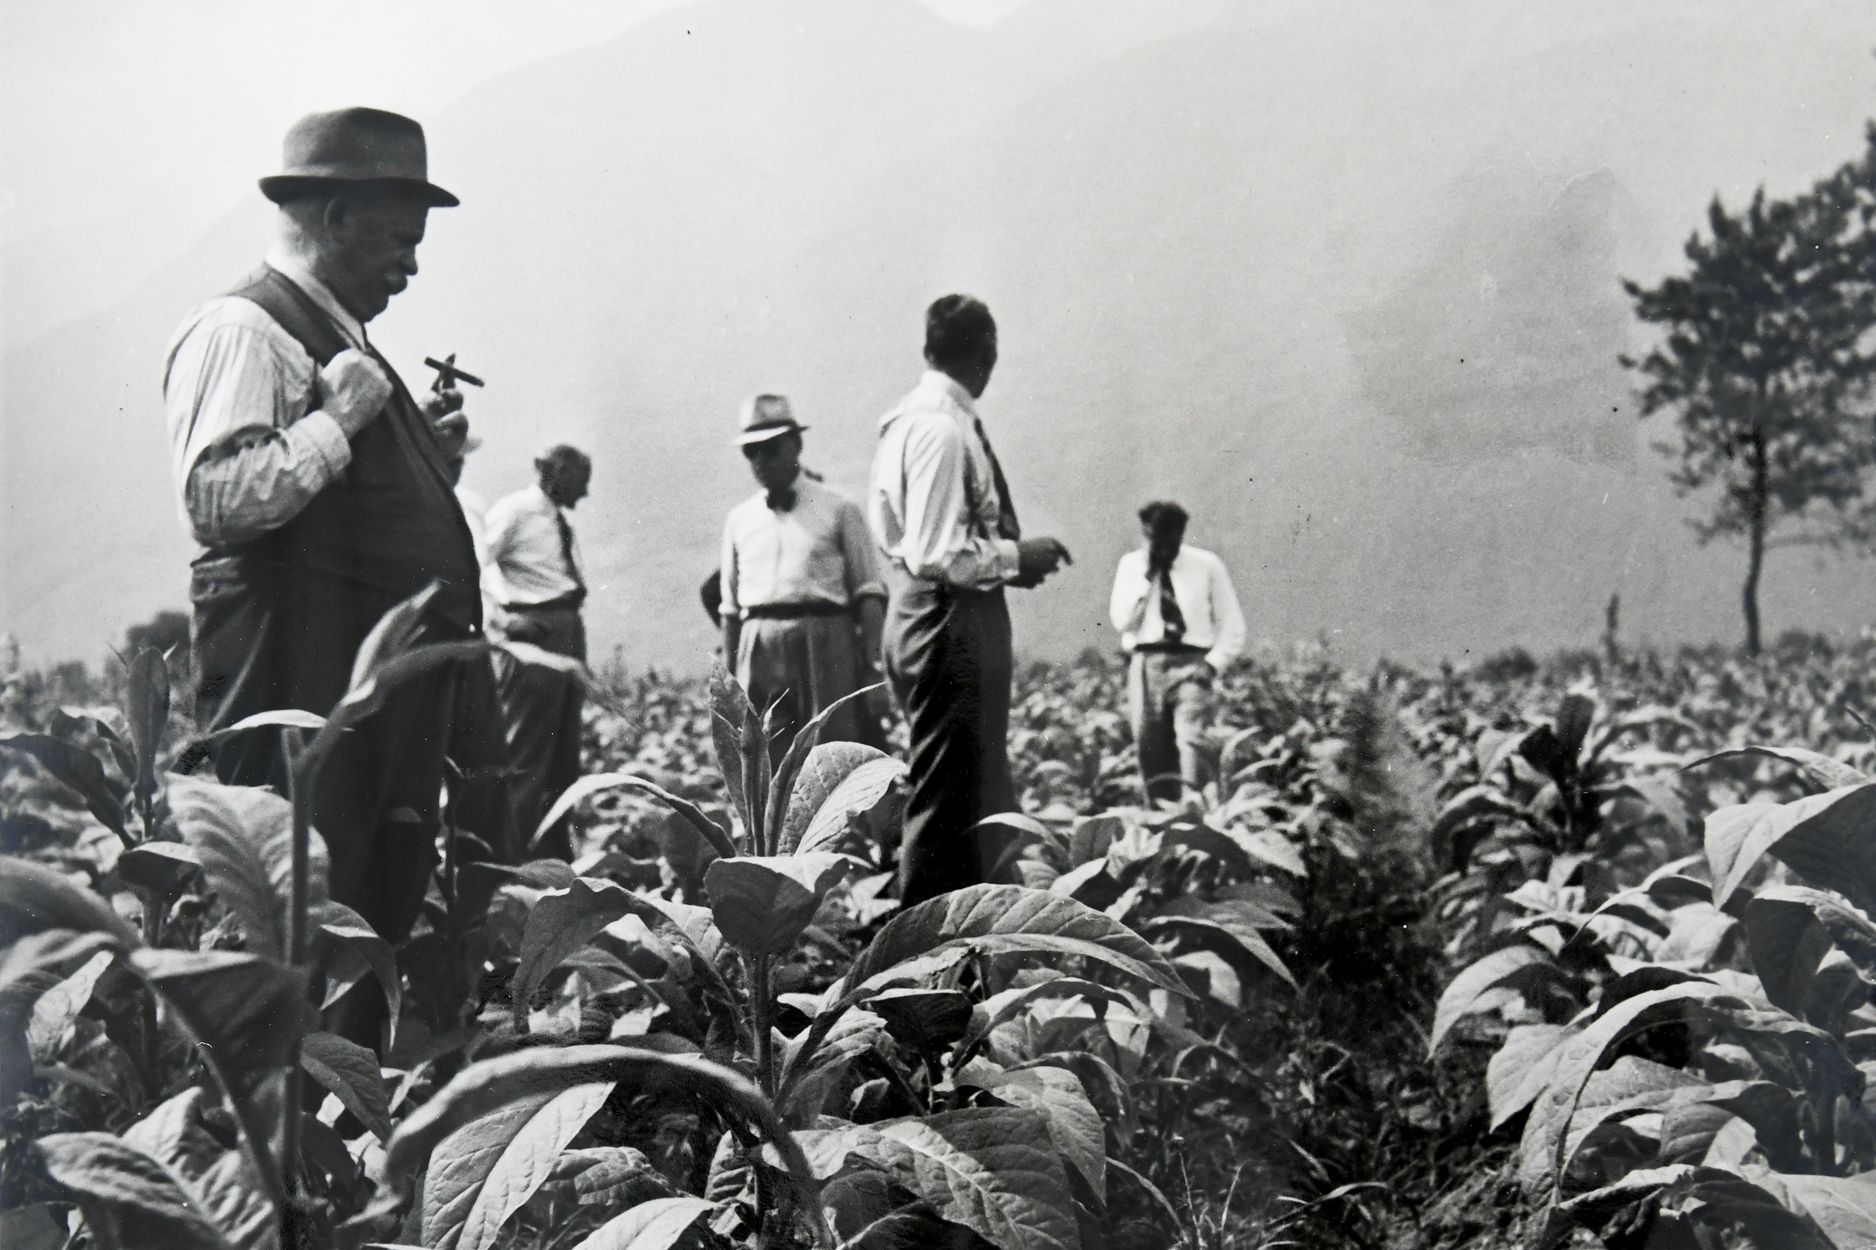 **Primo impianto di essicazione in Ticino**
La Polus era all’avanguardia nella fermentazione dei tabacchi e nel 1933 istallò il primo impianto per l’essicazione artificiale del tabacco in Svizzera.